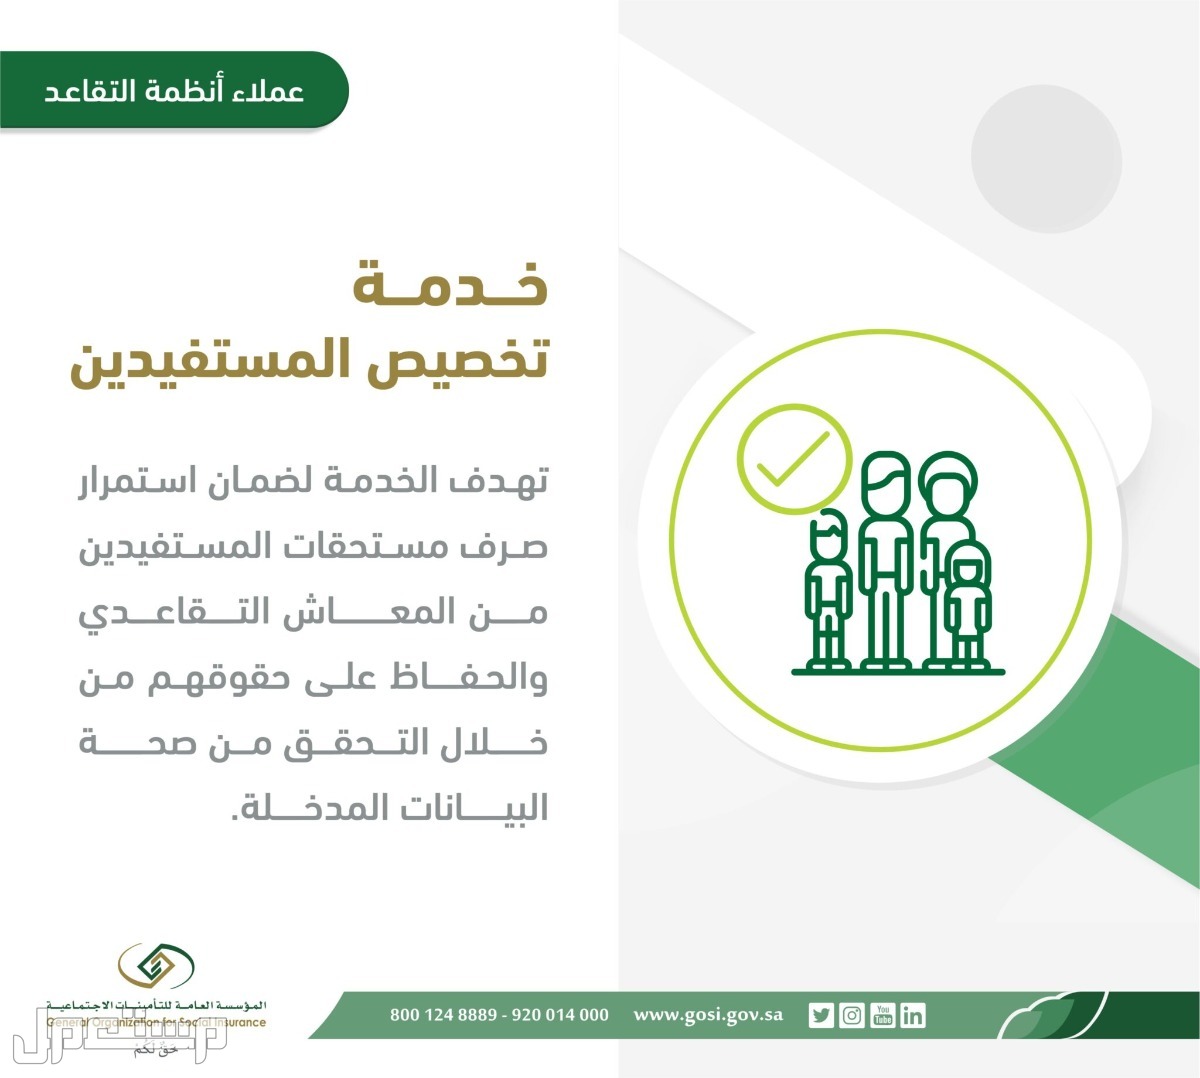 تعرف على خطوات تقديم طلب تخصيص المستفيدين المستحقين لتسوية المعاش في موريتانيا خدمة تخصيص المستفيدين